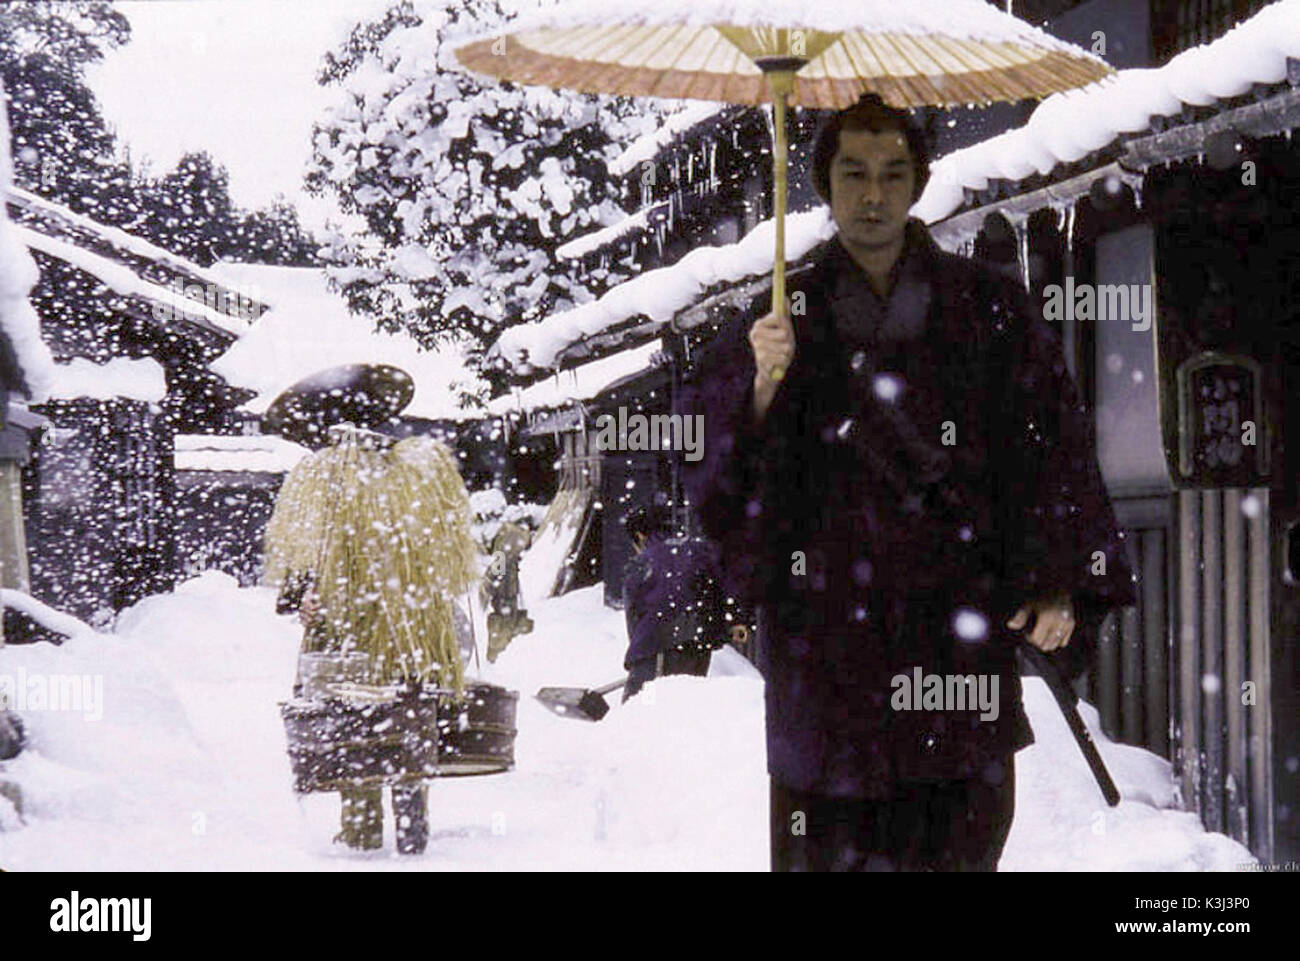 Masatoshi Nagase as 'Munezo Katagiri' in Yoji Yamada's 'The Hidden Blade'. THE HIDDEN BLADE [JAP 2004]  Masatoshi Nagase as 'Munezo Katagiri'     Date: 2004 Stock Photo